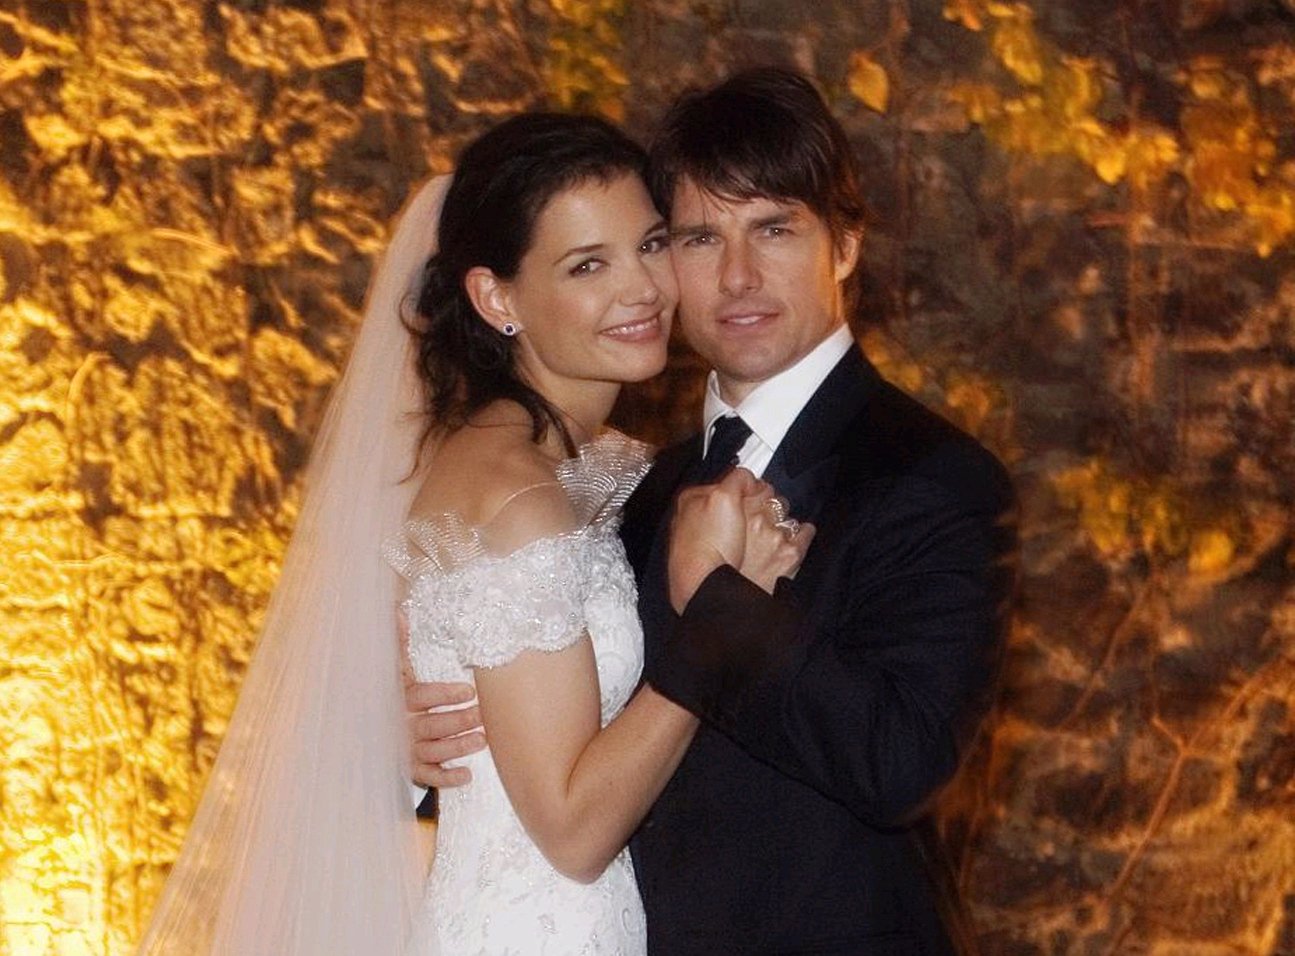 Katie Holmes y Tom Cruise en su boda en el Castillo de Odescalchi, el 18 de noviembre de 2006 en Roma, Italia. | Foto: Getty Images